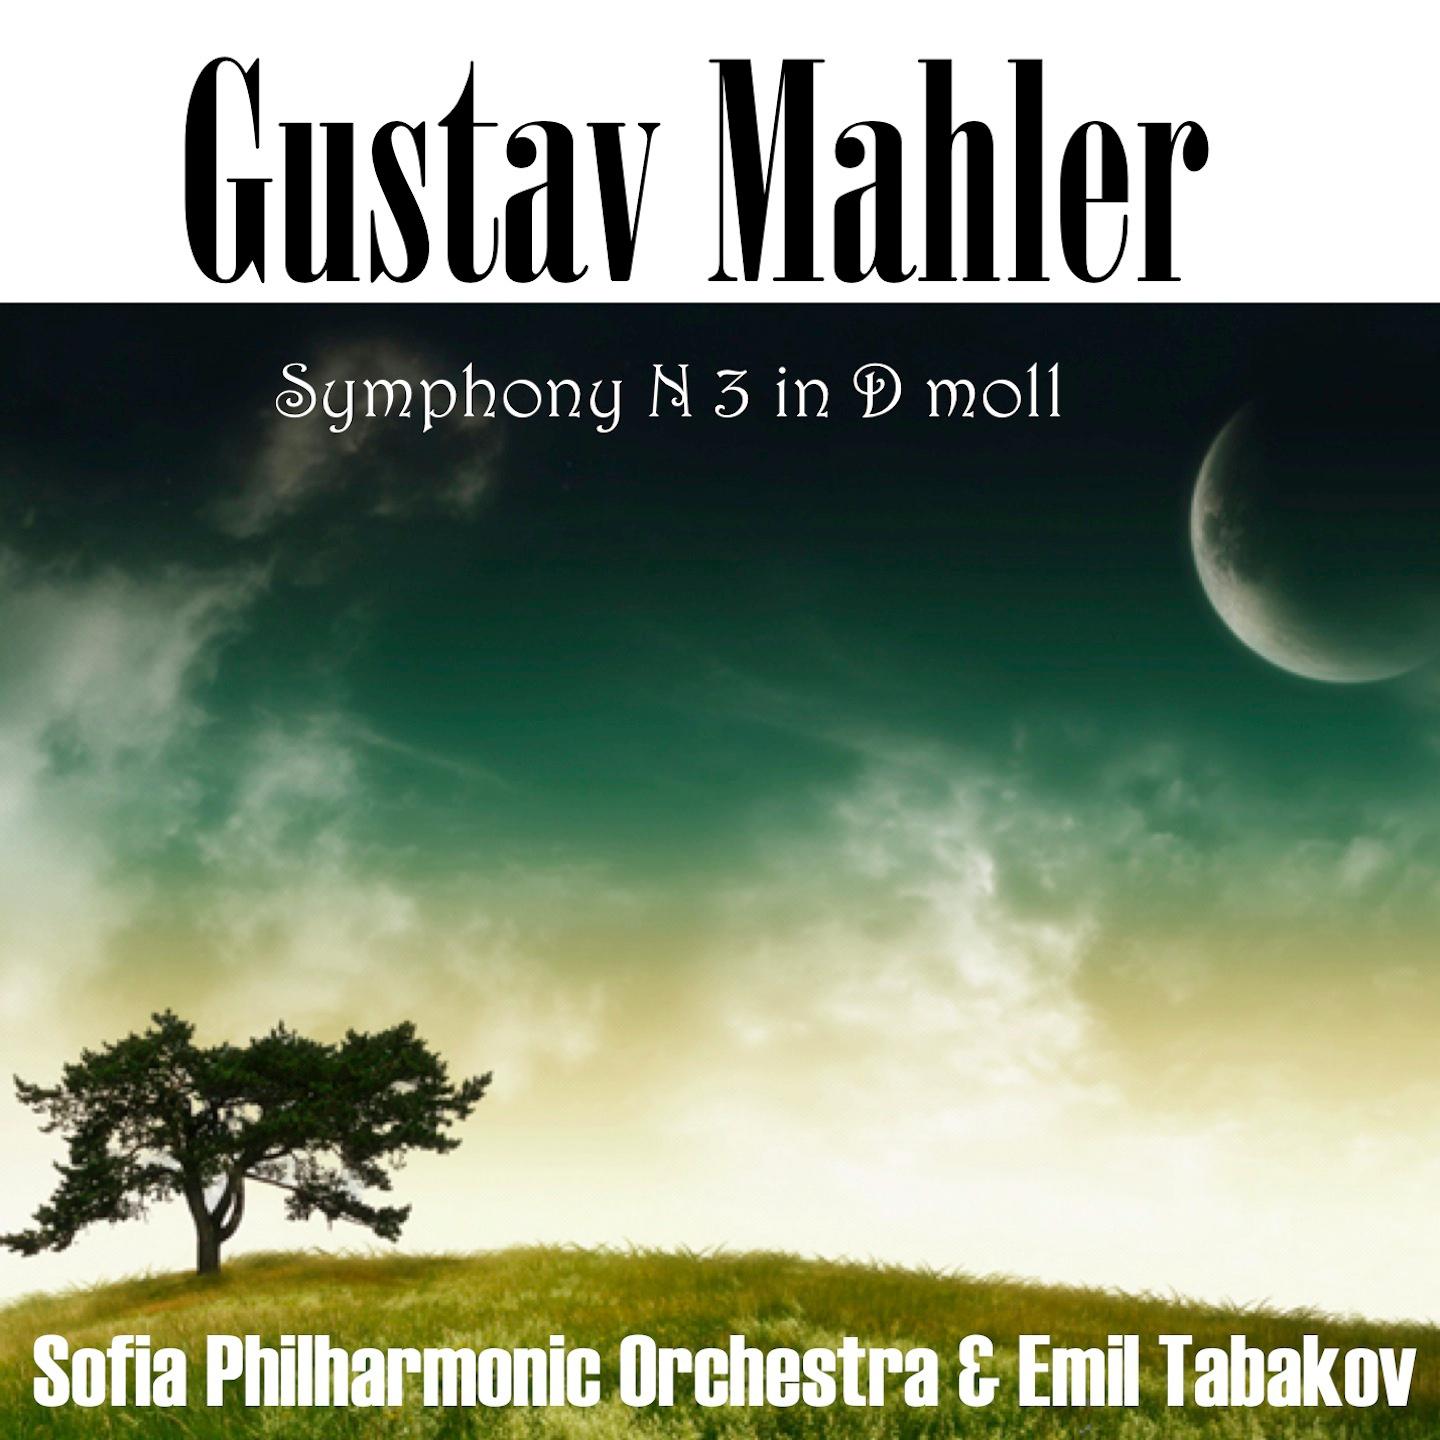 Gustav Mahler: Symphony No 3 in D-moll